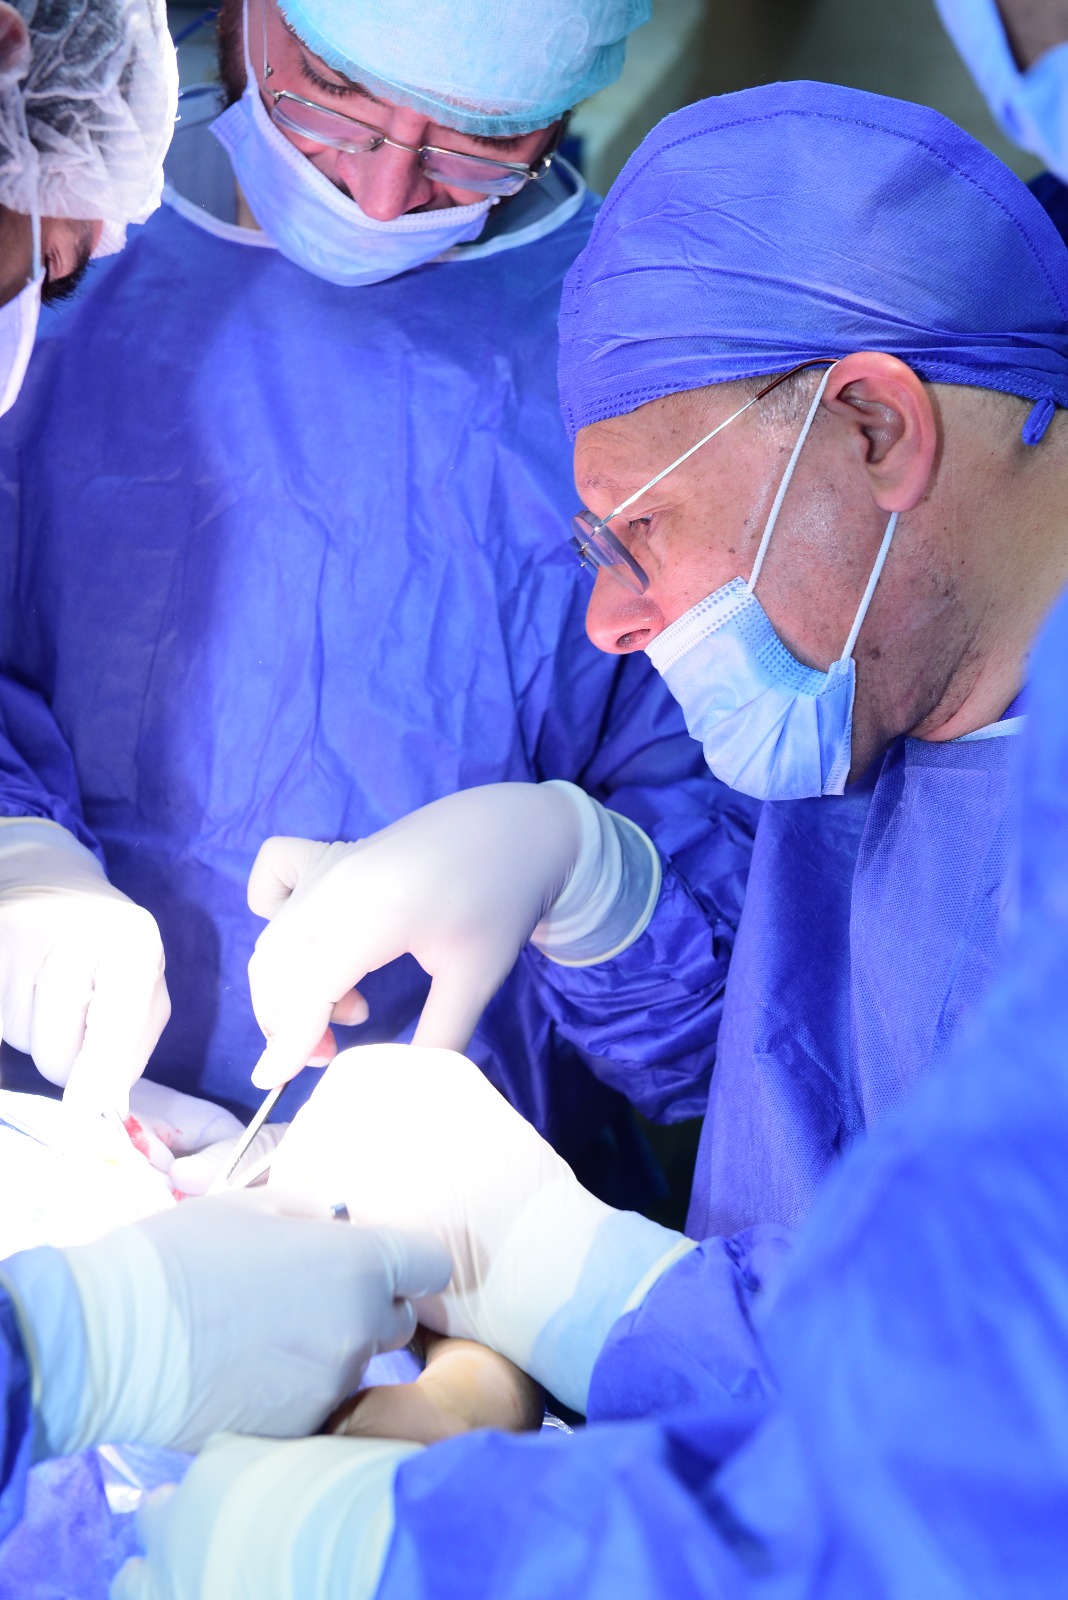 رئيس جامعة سوهاج يجري عملية جراحية دقيقة استغرقت ٩ ساعات لطفلة مصابة بشلل ولادي